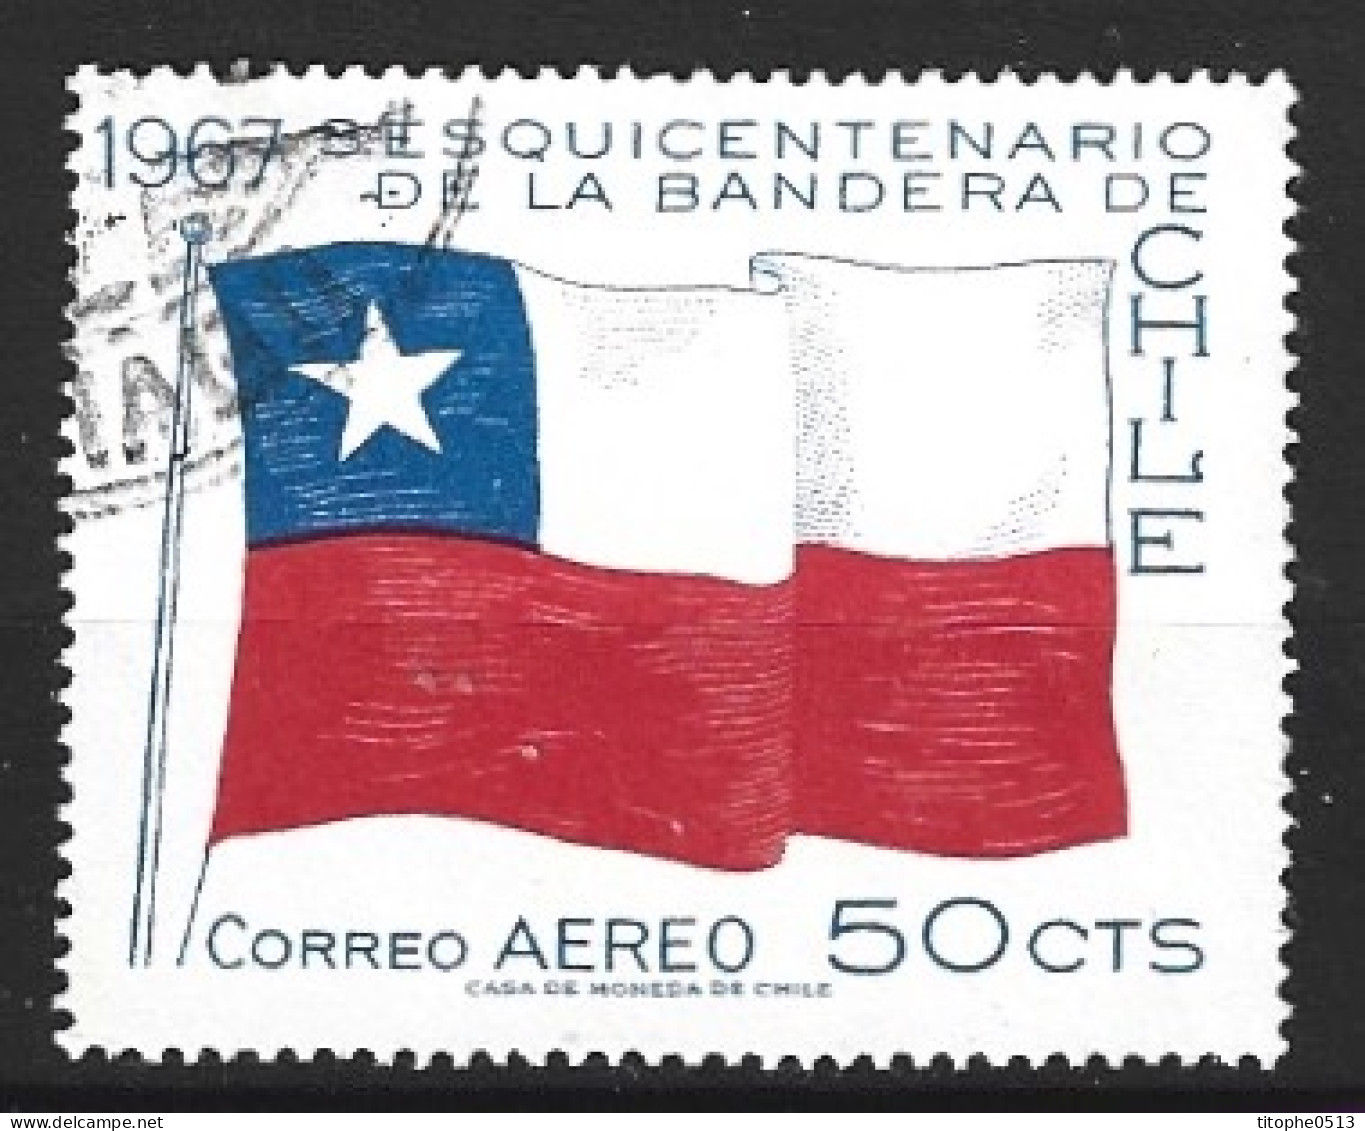 CHILI. PA 242 Oblitéré De 1967. Drapeau National. - Stamps